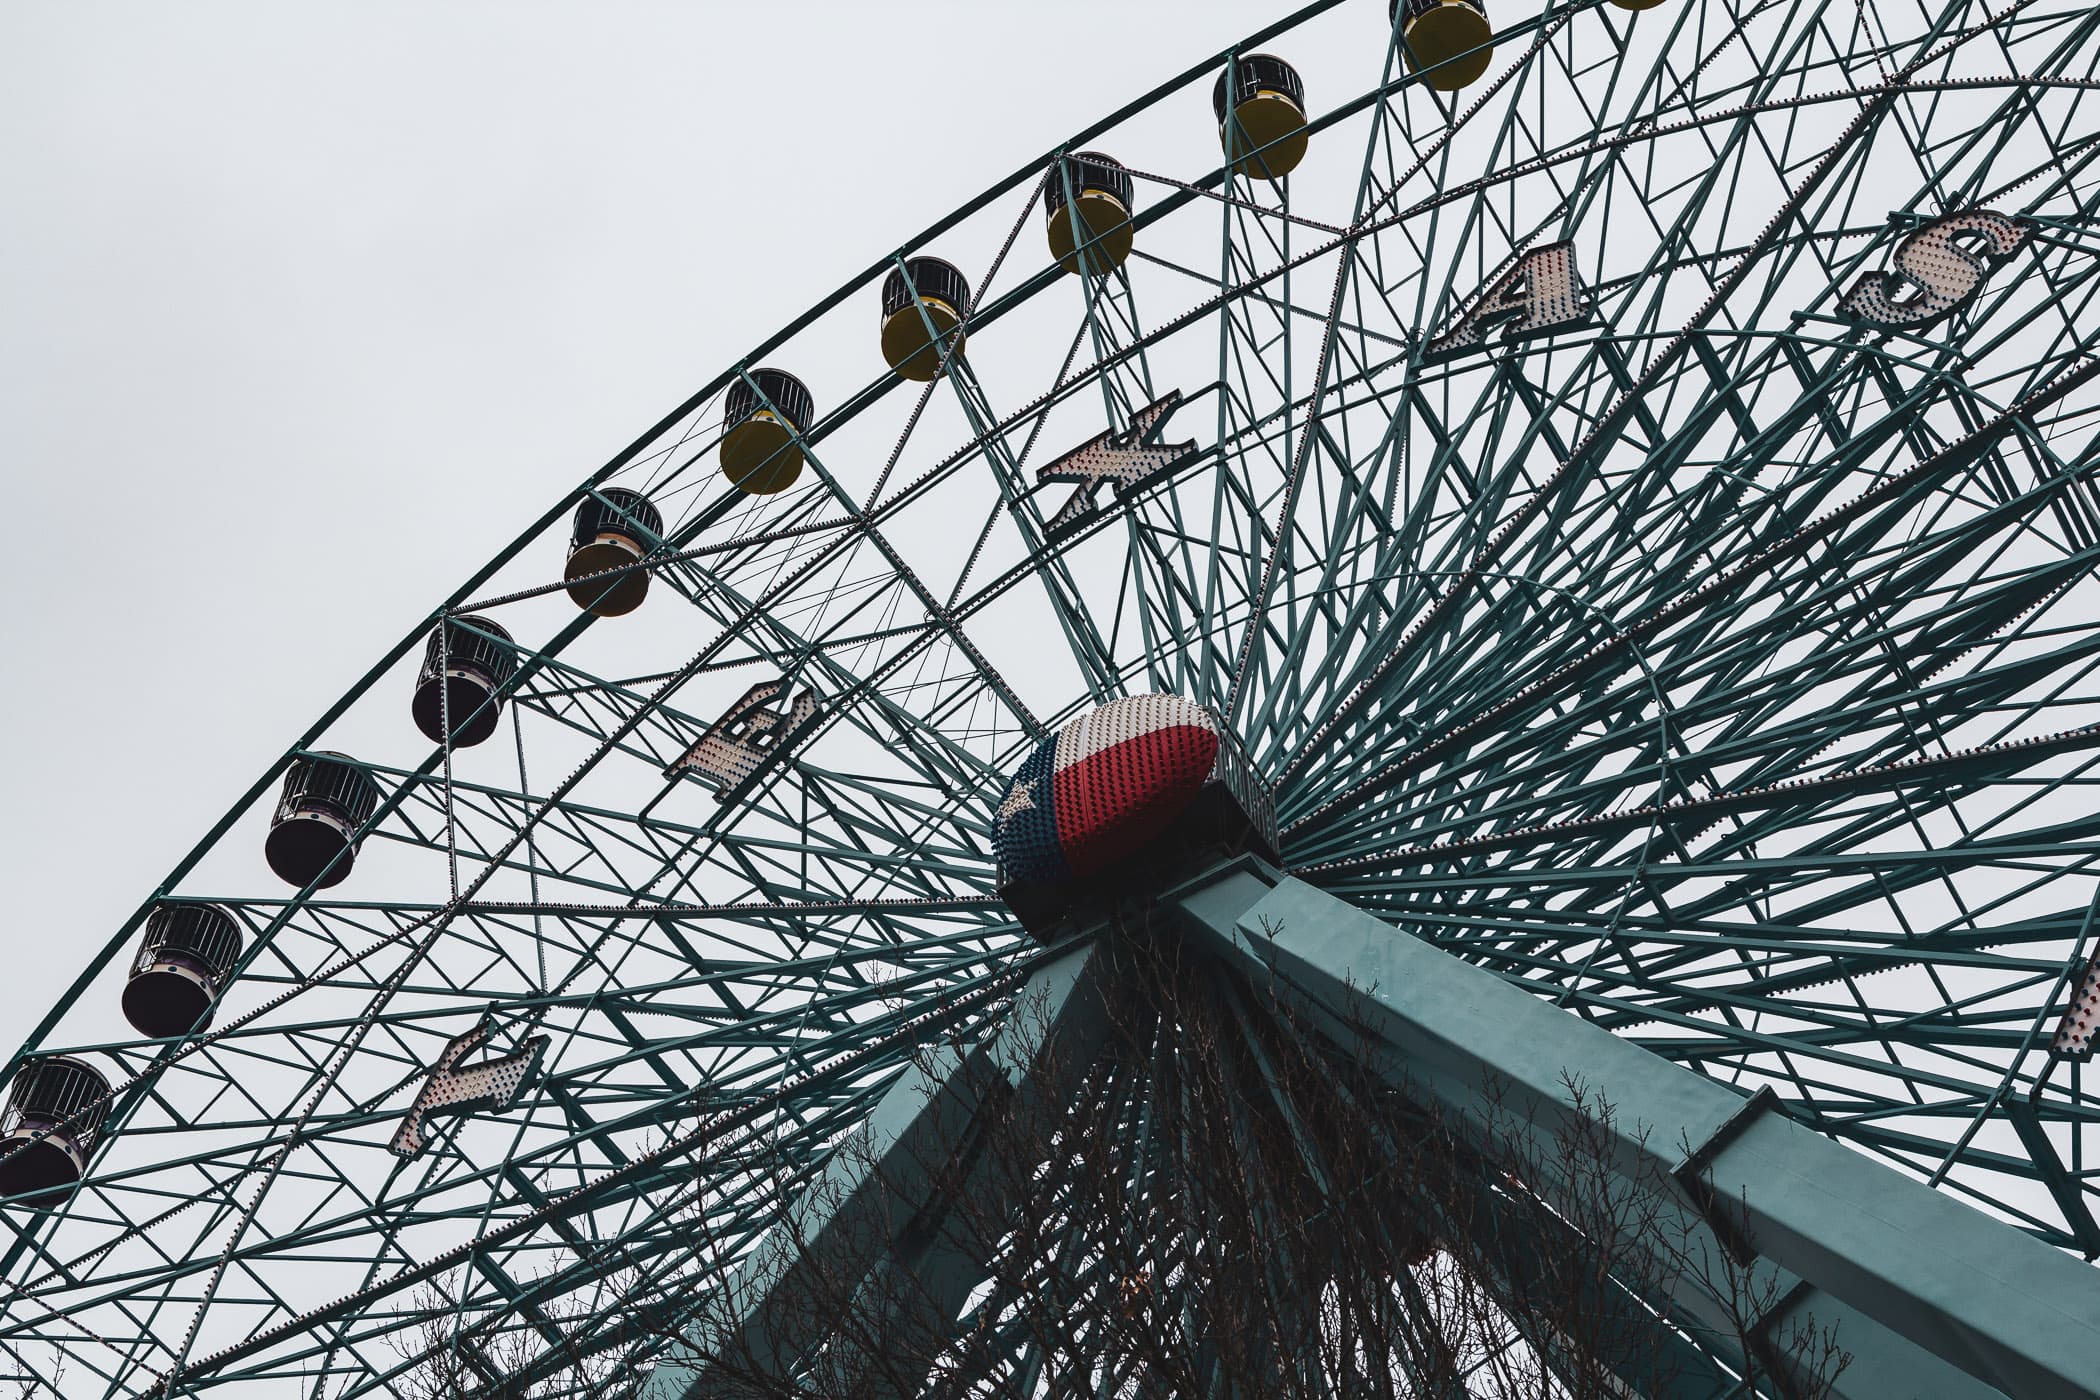 The Texas Star Ferris wheel rises into the overcast sky over Dallas' Fair Park.